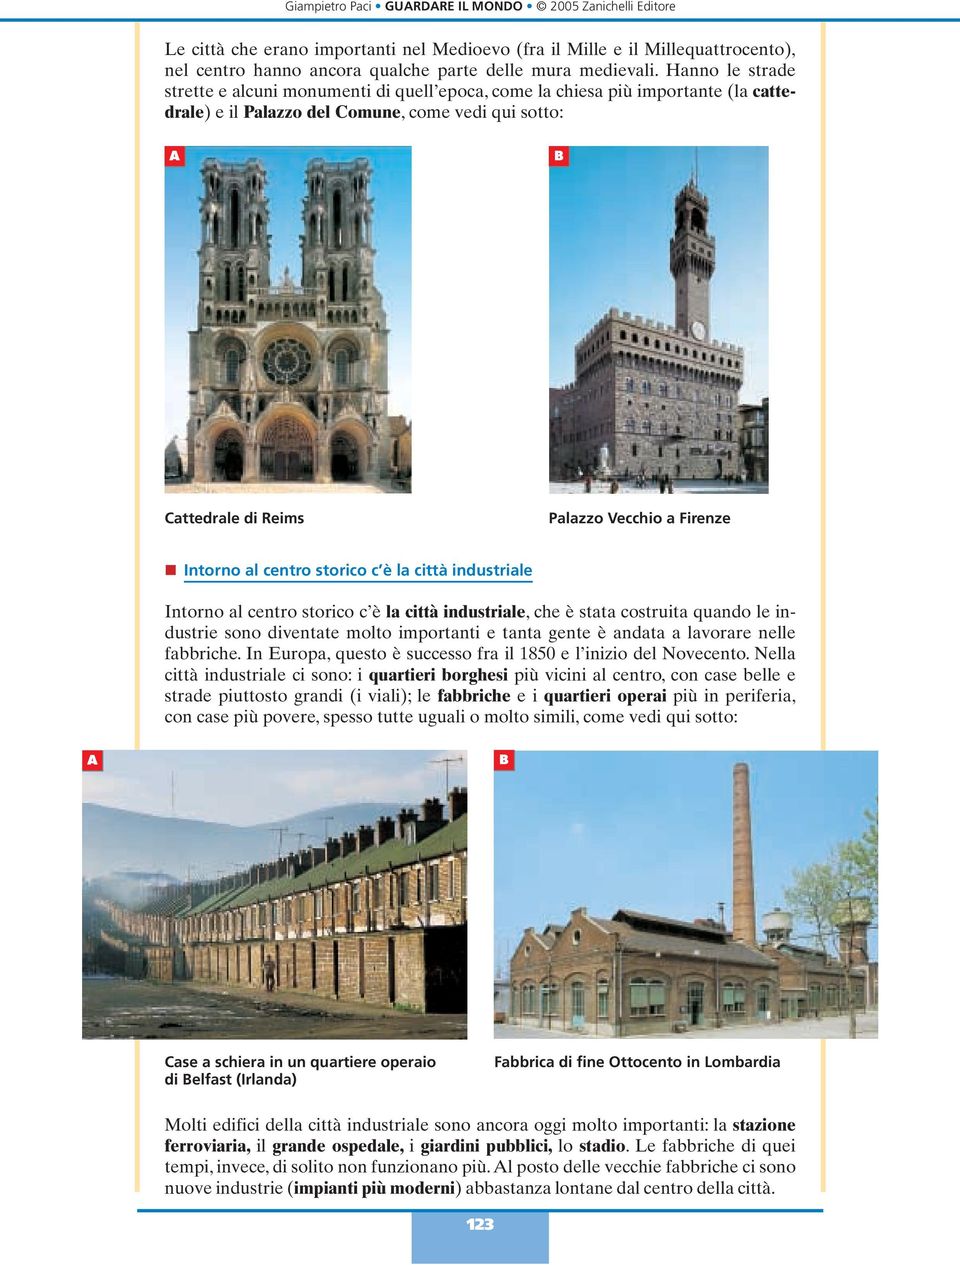 Firenze n Intorno al centro storico c è la città industriale Intorno al centro storico c è la città industriale, che è stata costruita quando le industrie sono diventate molto importanti e tanta